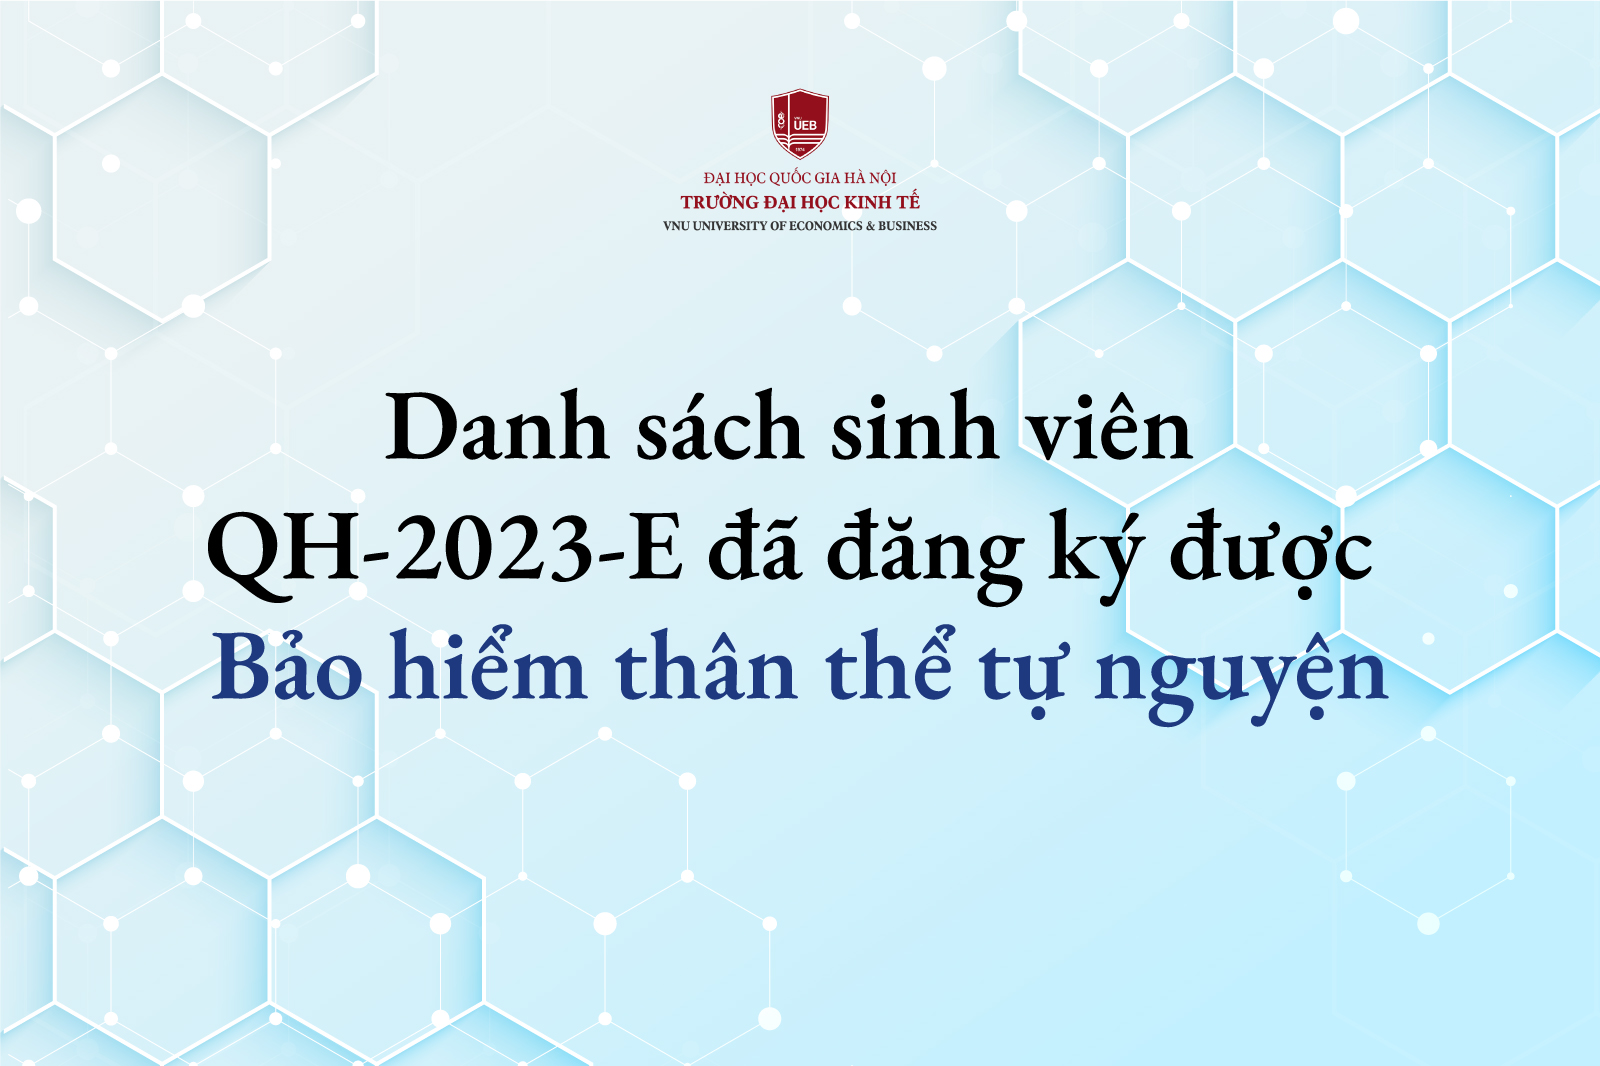 Thông báo danh sách sinh viên QH-2023-E đã đăng ký được Bảo hiểm thân thể tự nguyện